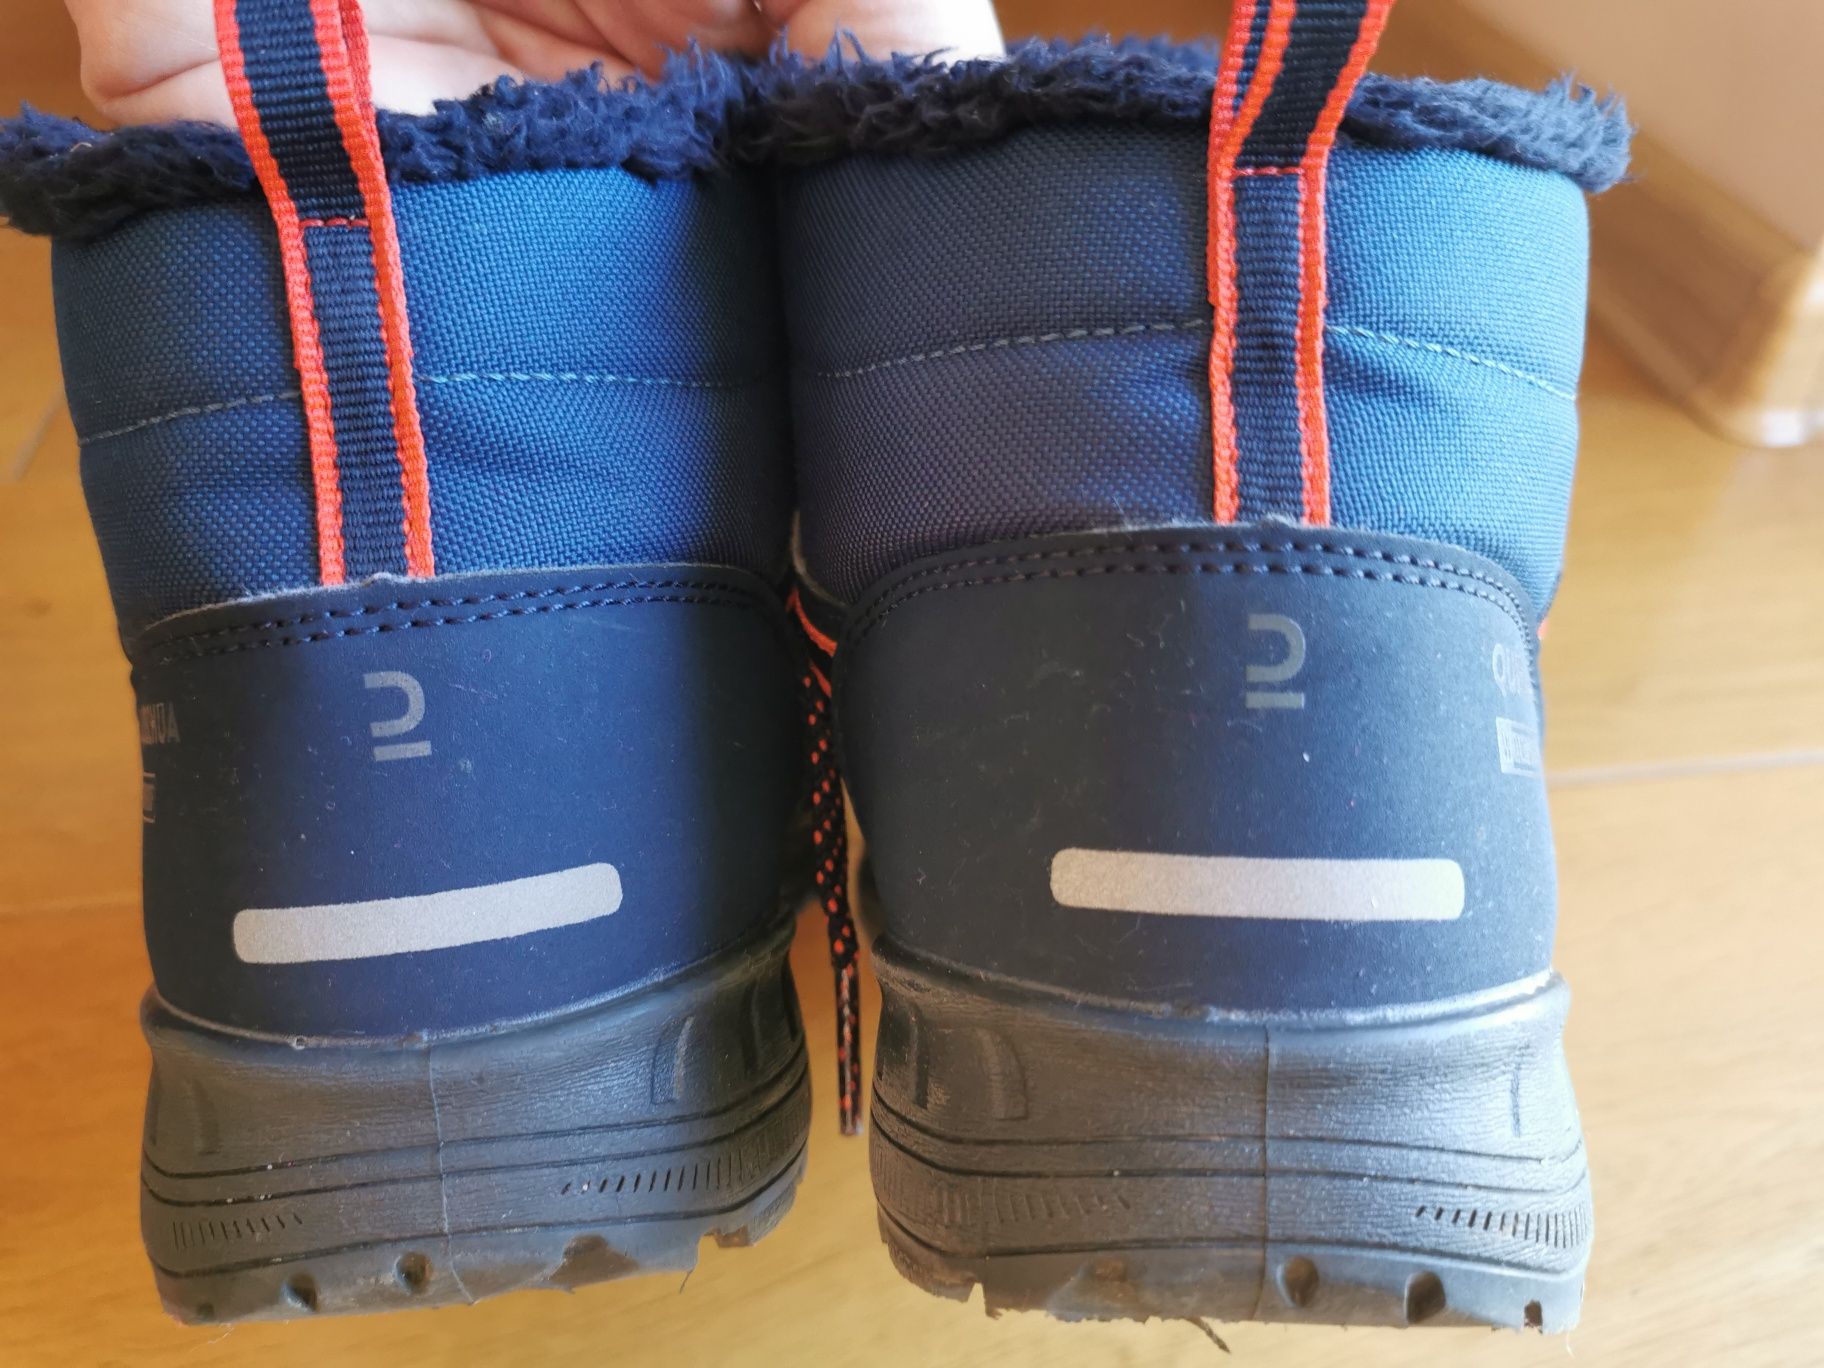 Buty turystyczne dla dzieci. Quechua SH100 rozmiar 35